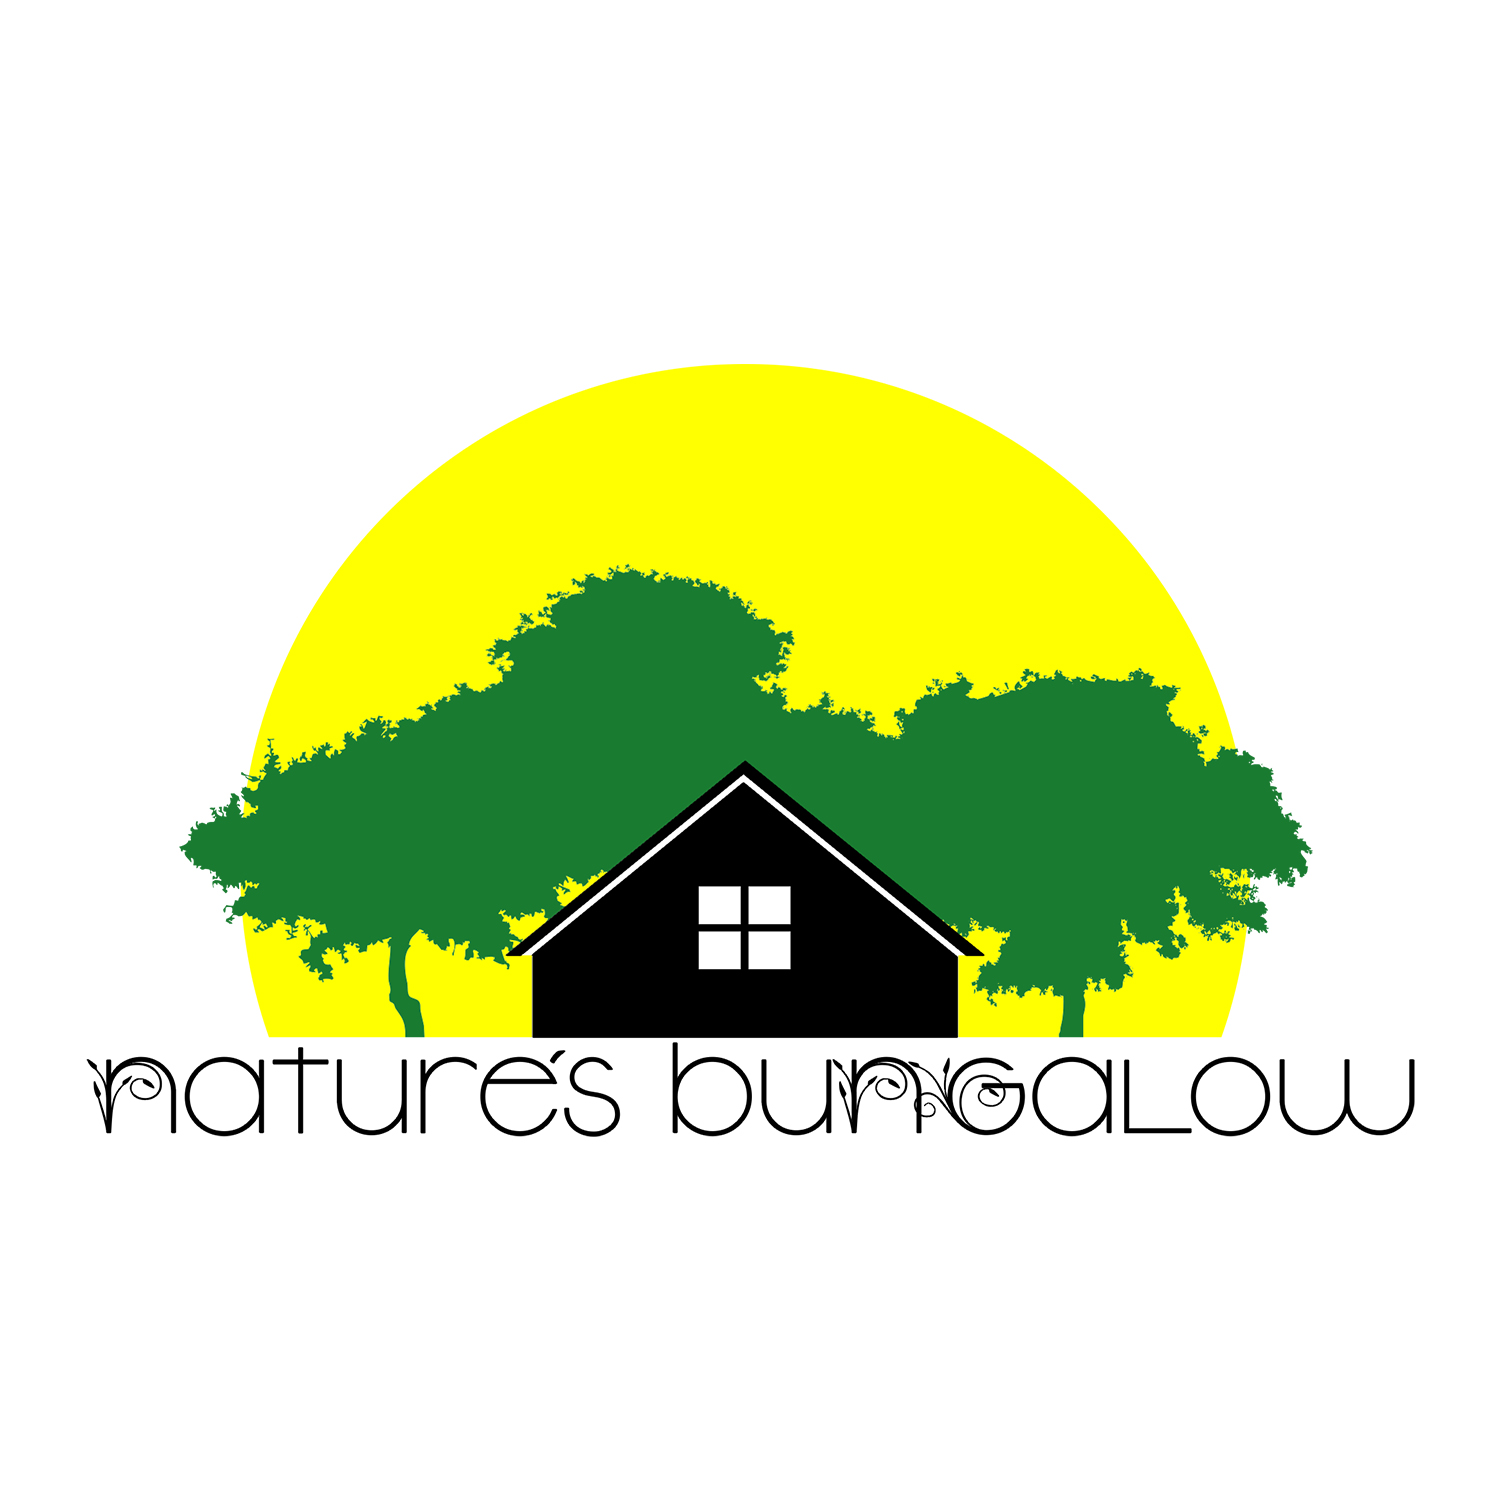 NaturesBungalow.jpg